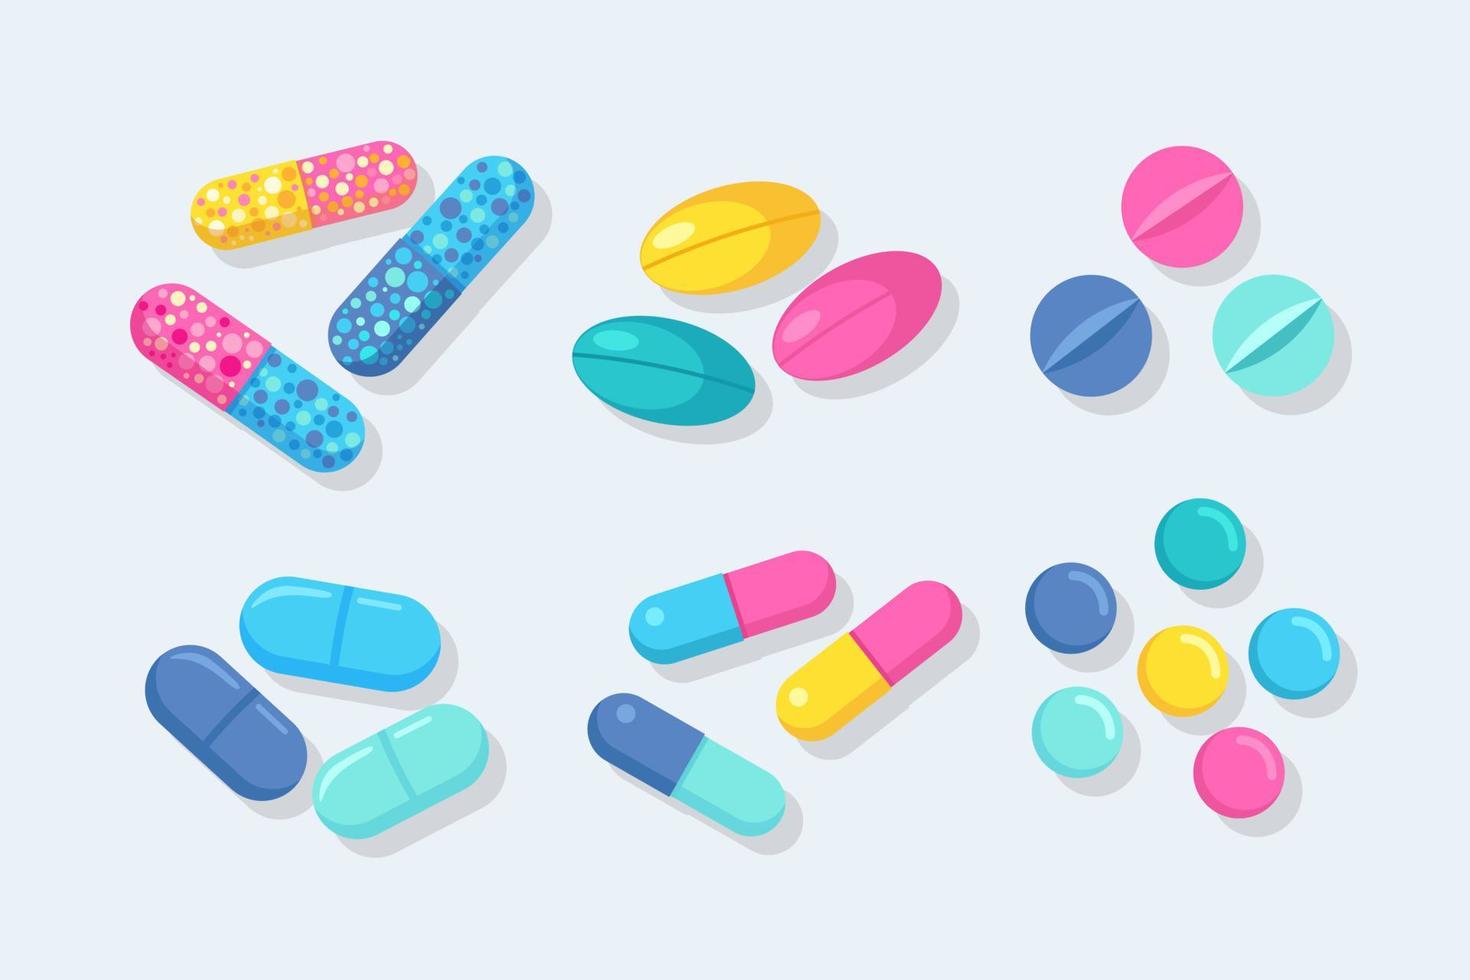 conjunto de pastillas, medicamentos, drogas. tableta analgésica, vitamina, antibióticos farmacéuticos. concepto de salud. diseño de dibujos animados de vectores